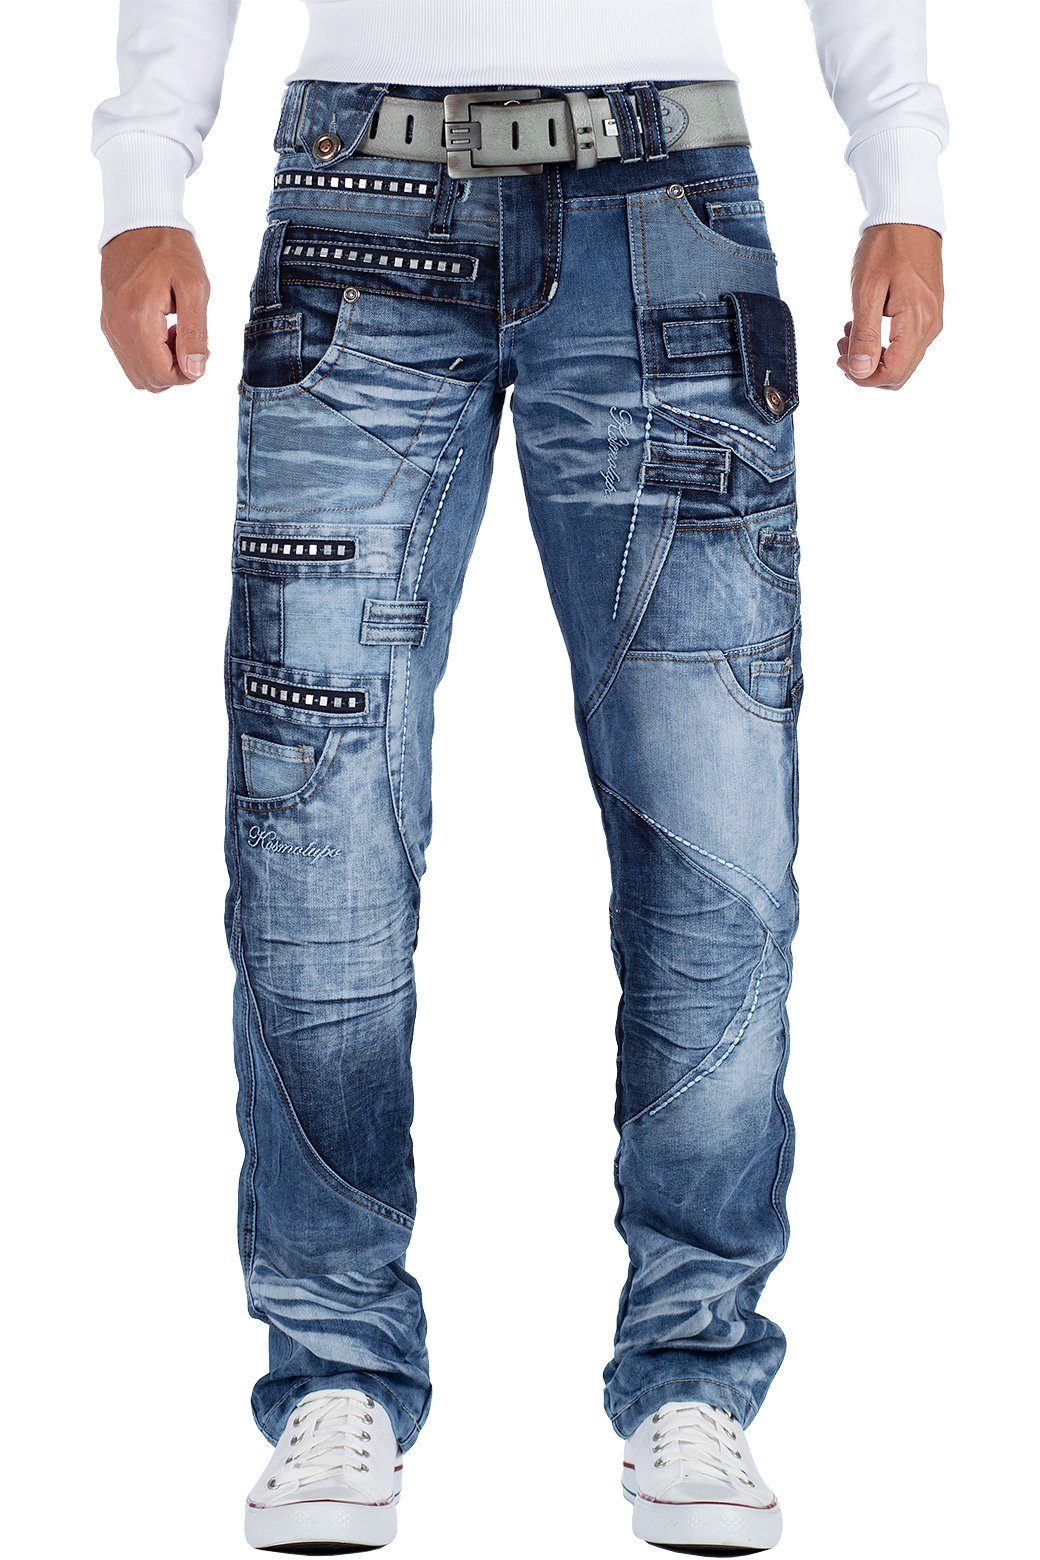 Kosmo Lupo 5-Pocket-Jeans Auffällige Herren Hose BA-KM001 mit Verzierungen  und Nieten